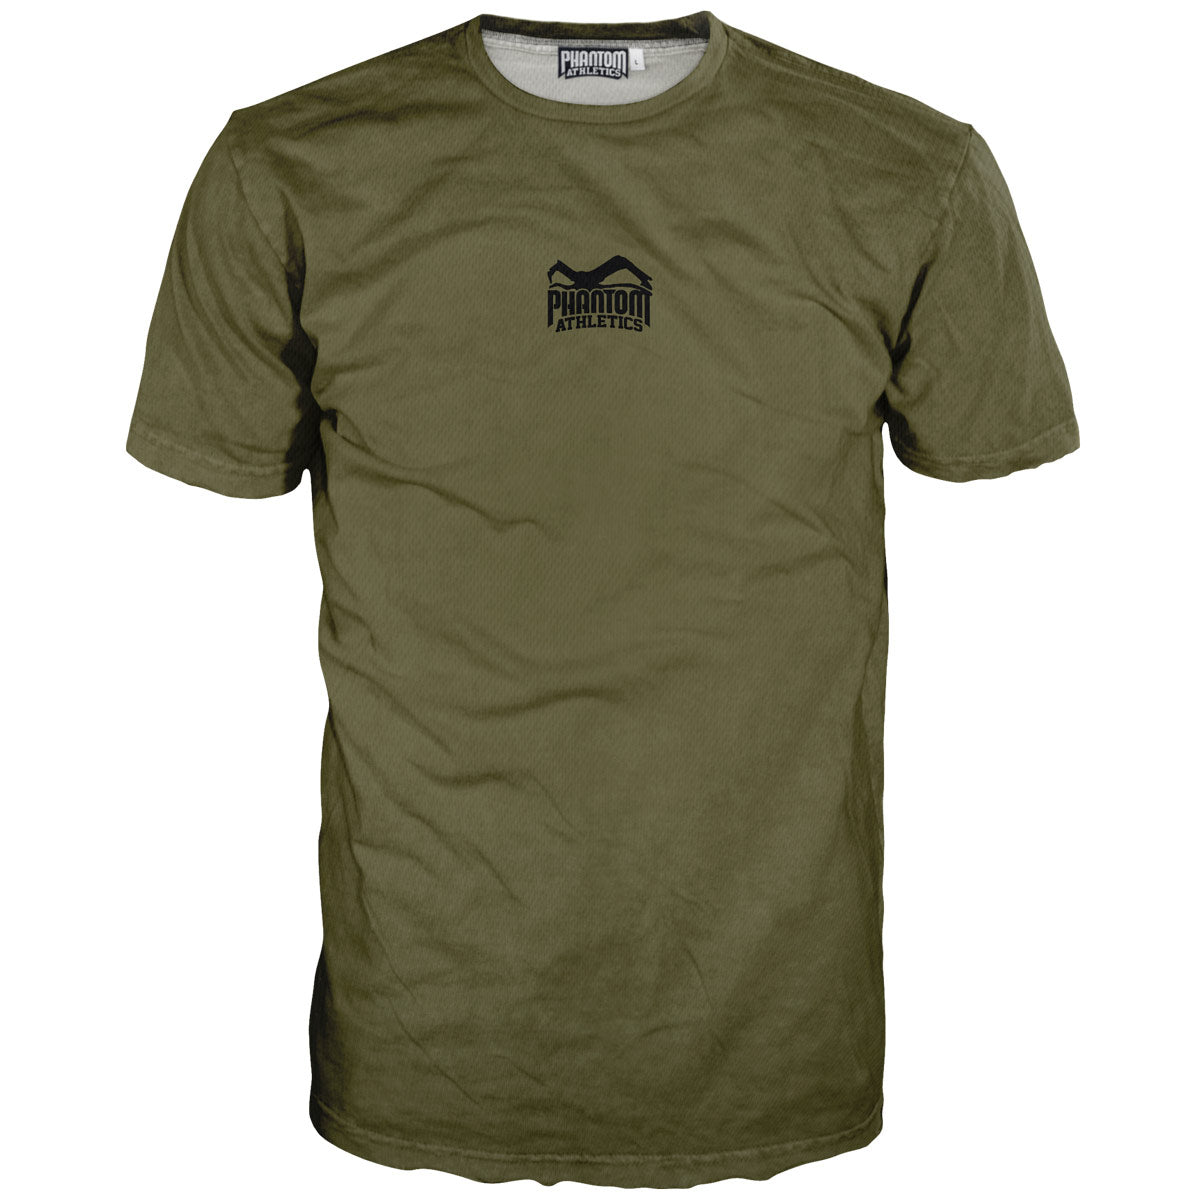 Training shirt evo apex - army